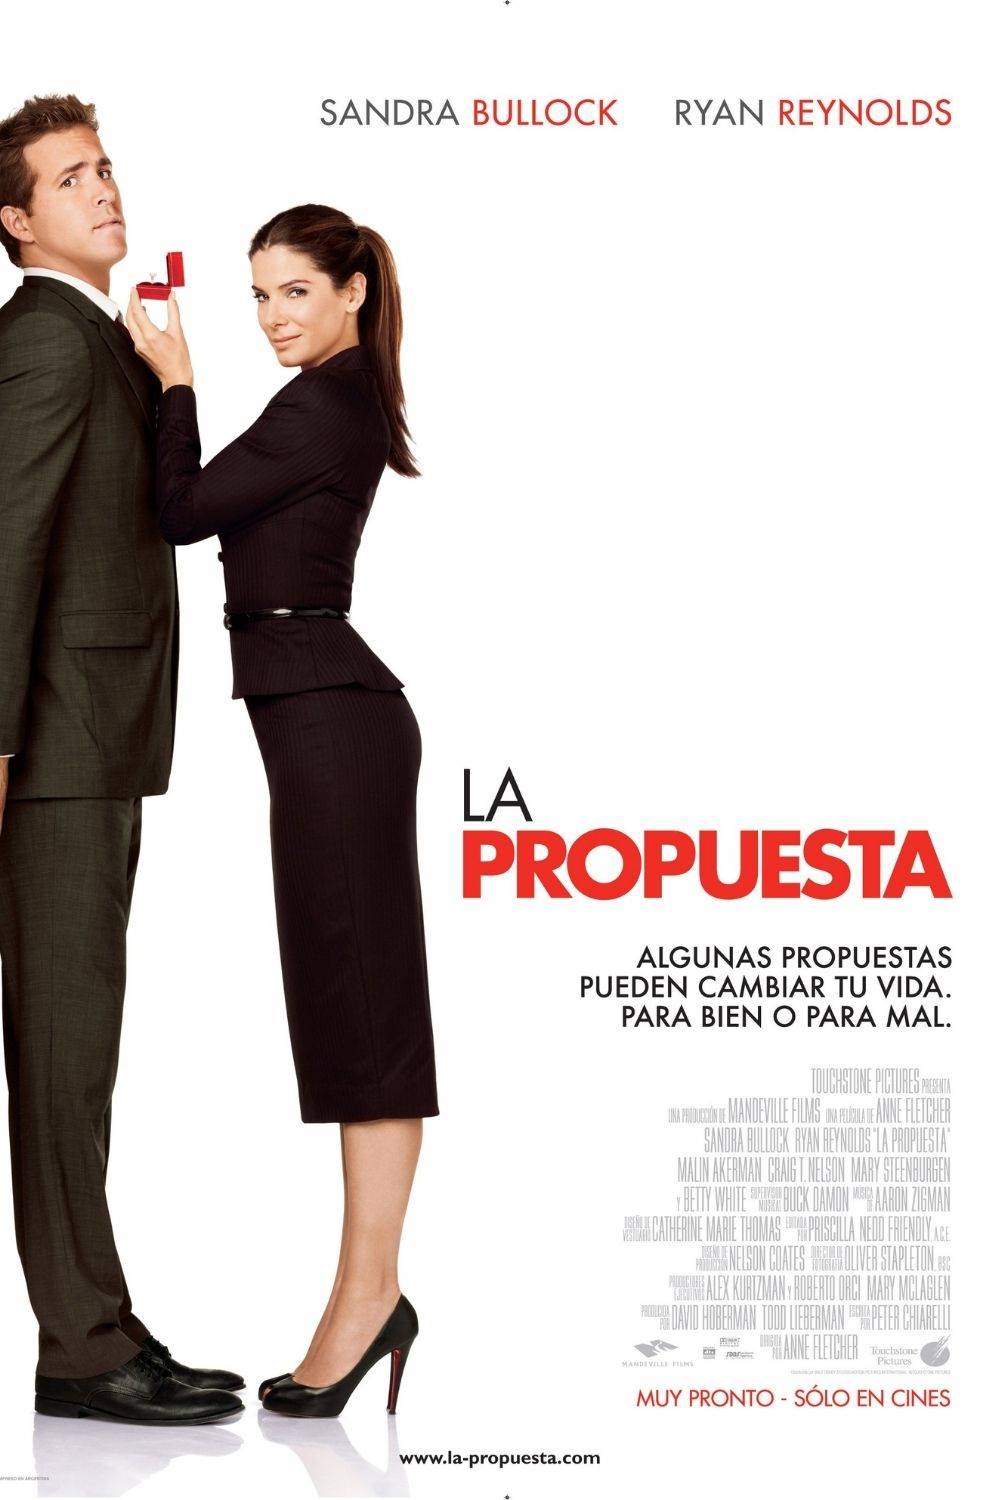 Comedias románticas - La propuesta (2005)